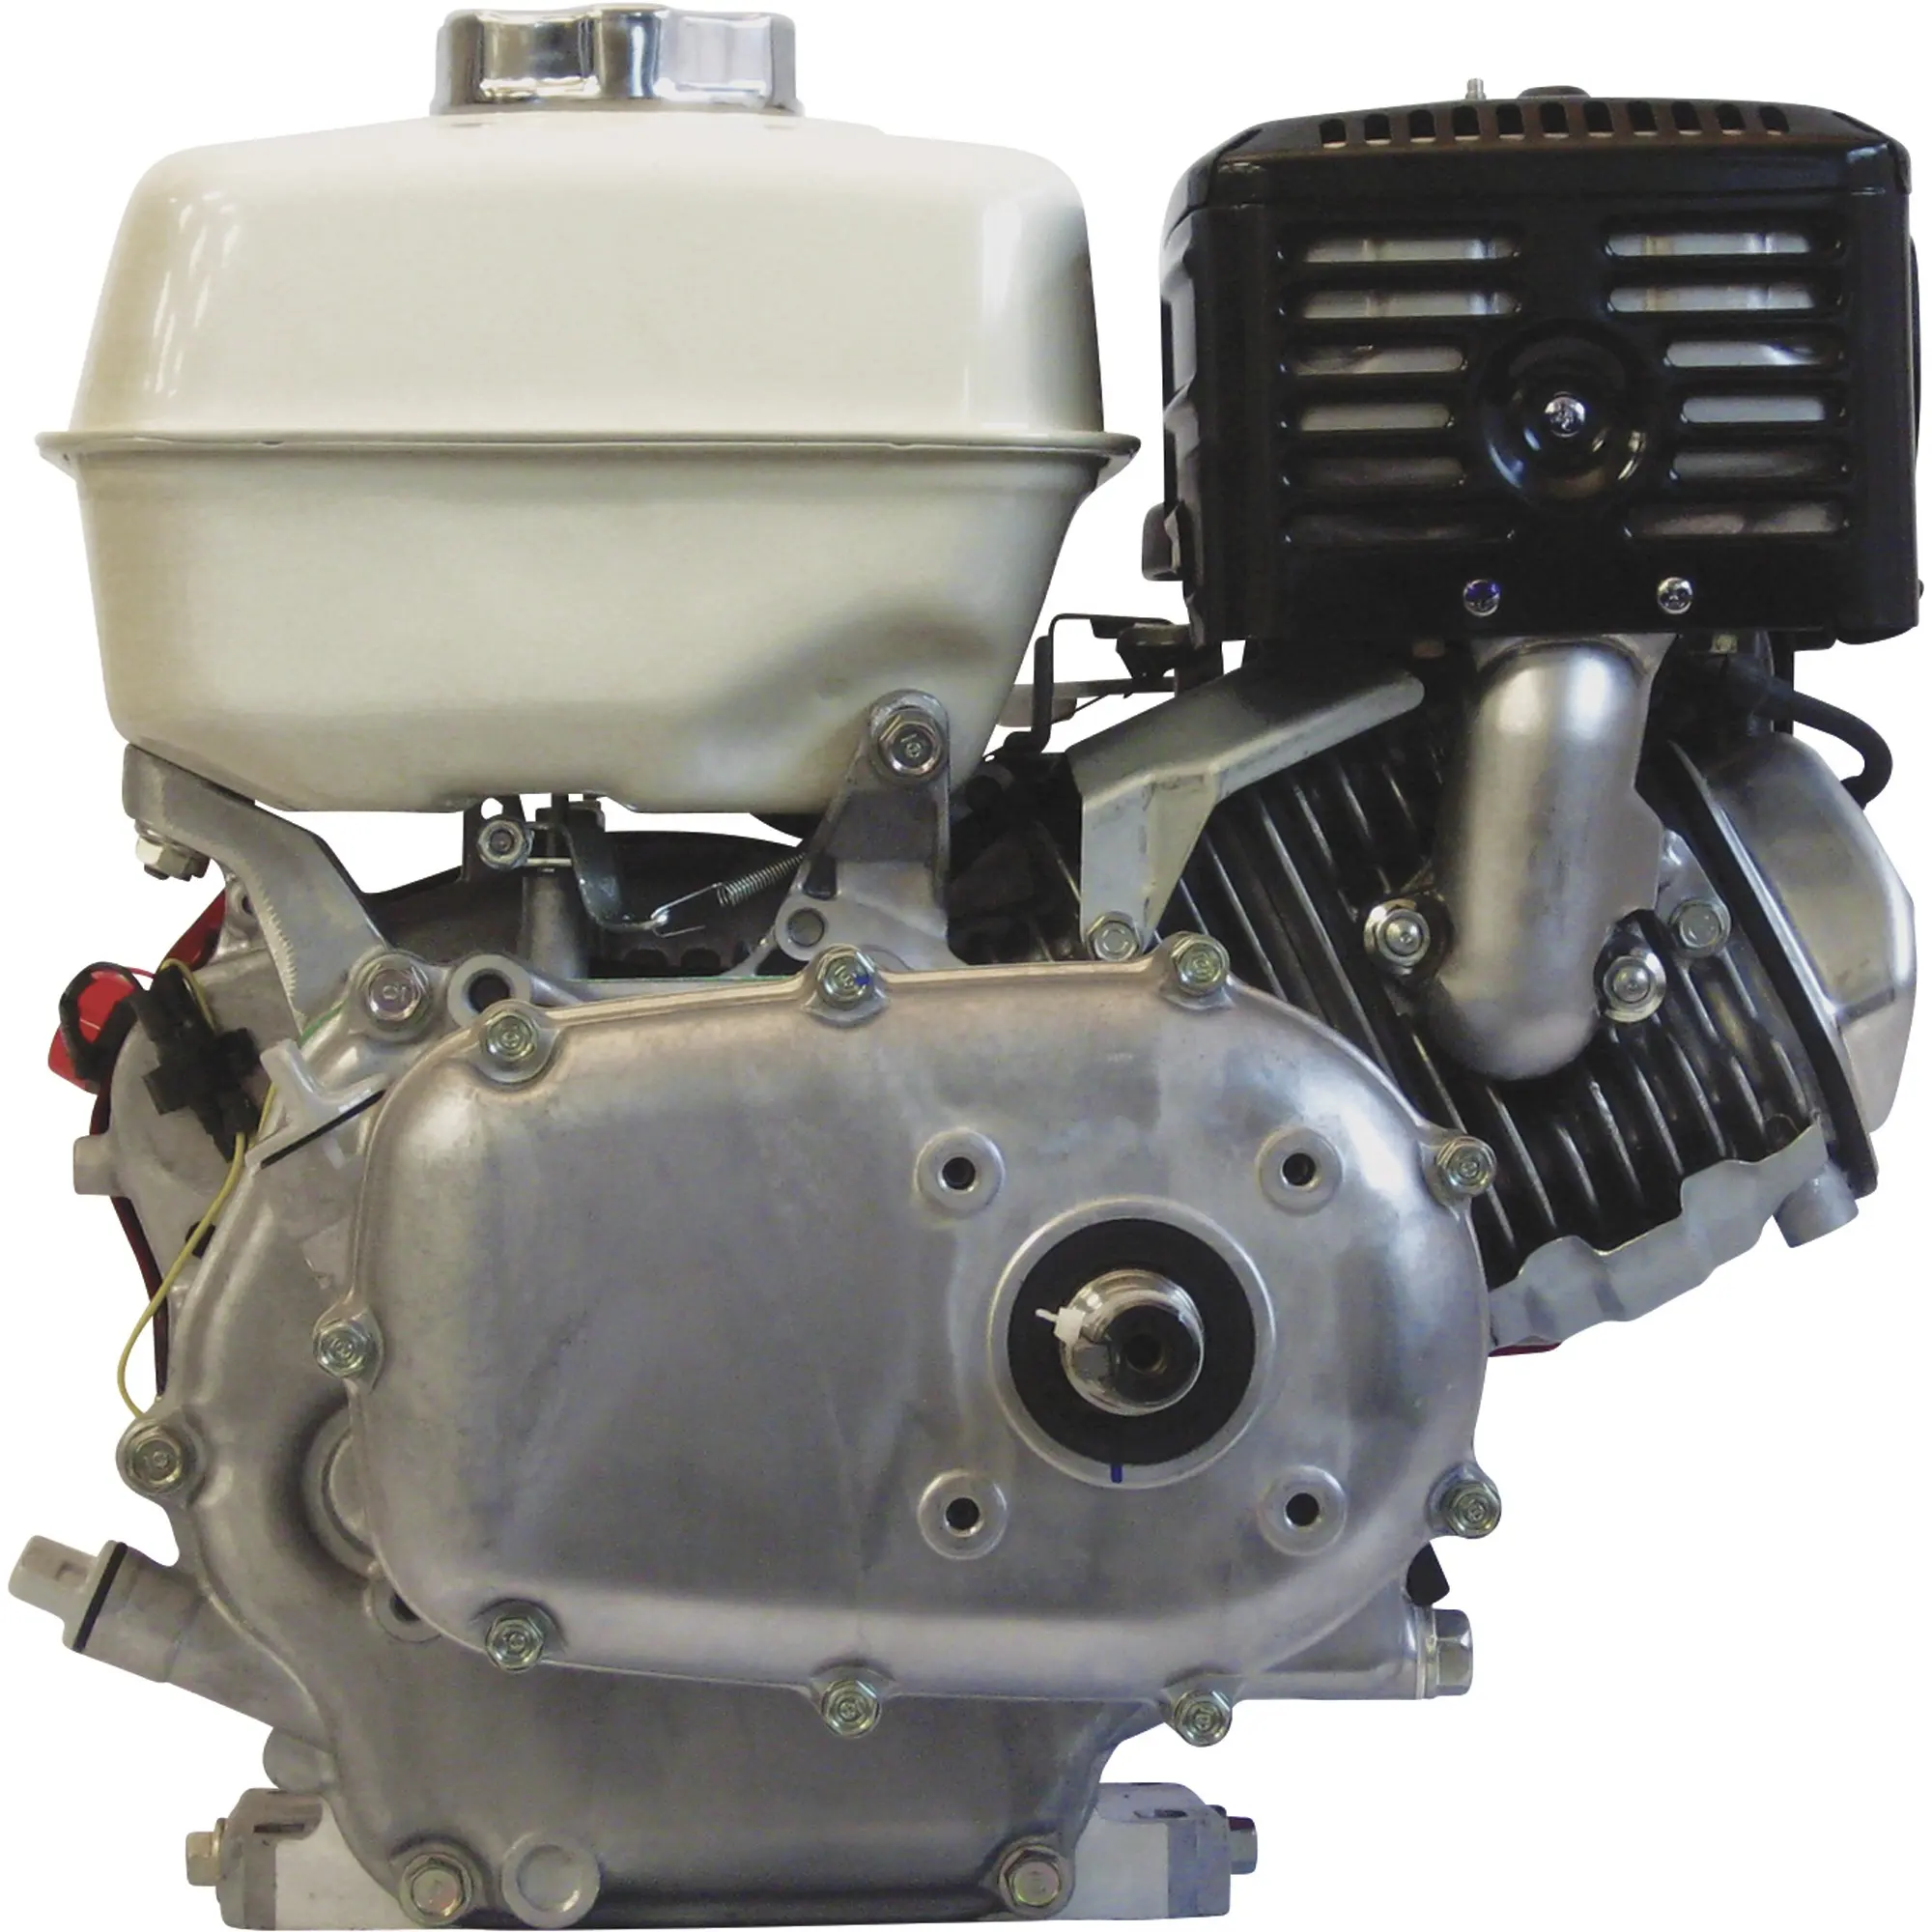 13HP Orizzontale OHV 2: 1 Motore A Benzina di Riduzione Ad Ingranaggi Per Go Kart